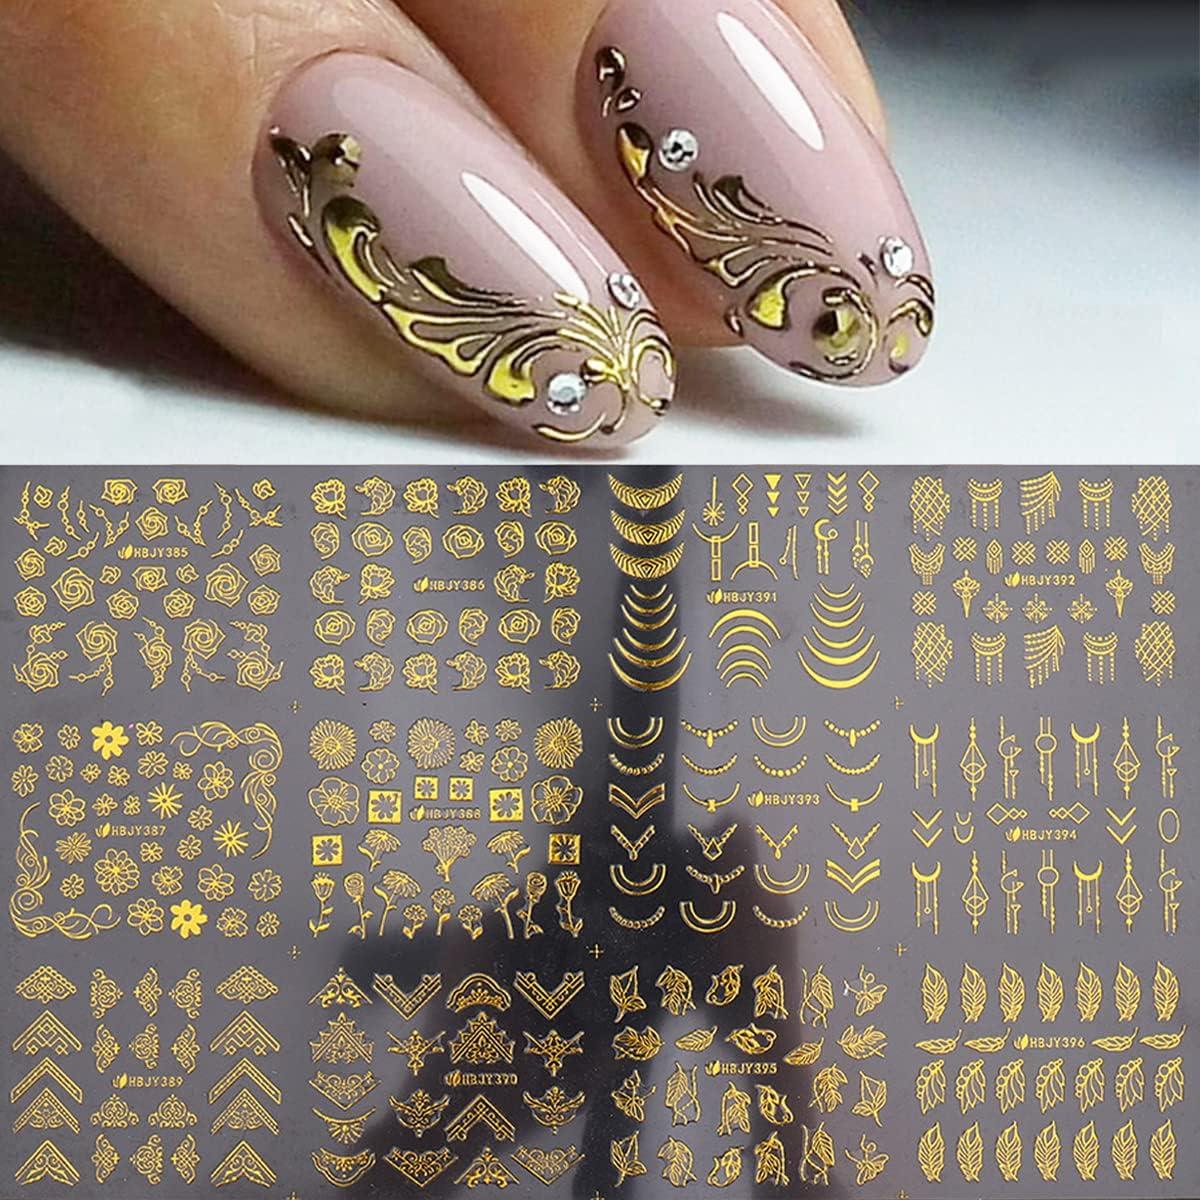 blacklace #blacklacenails #blacknails | Lace nails, Lace nail art,  Valentine's day nails